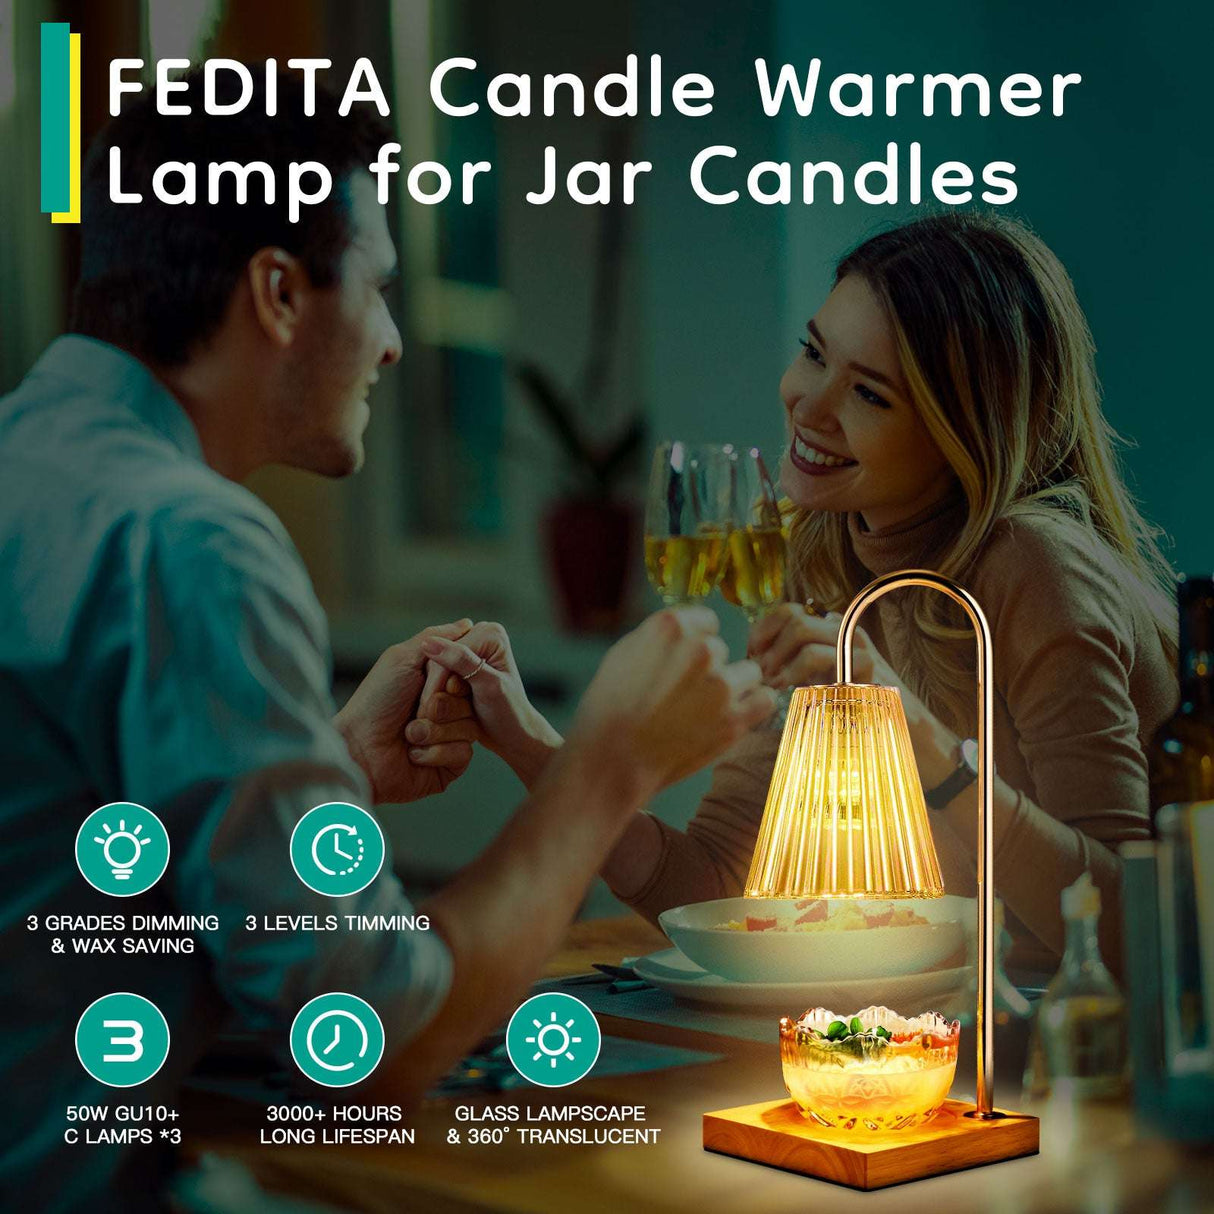 Elegant Glow Aromatherapy Lamp - Gifting By Julia M